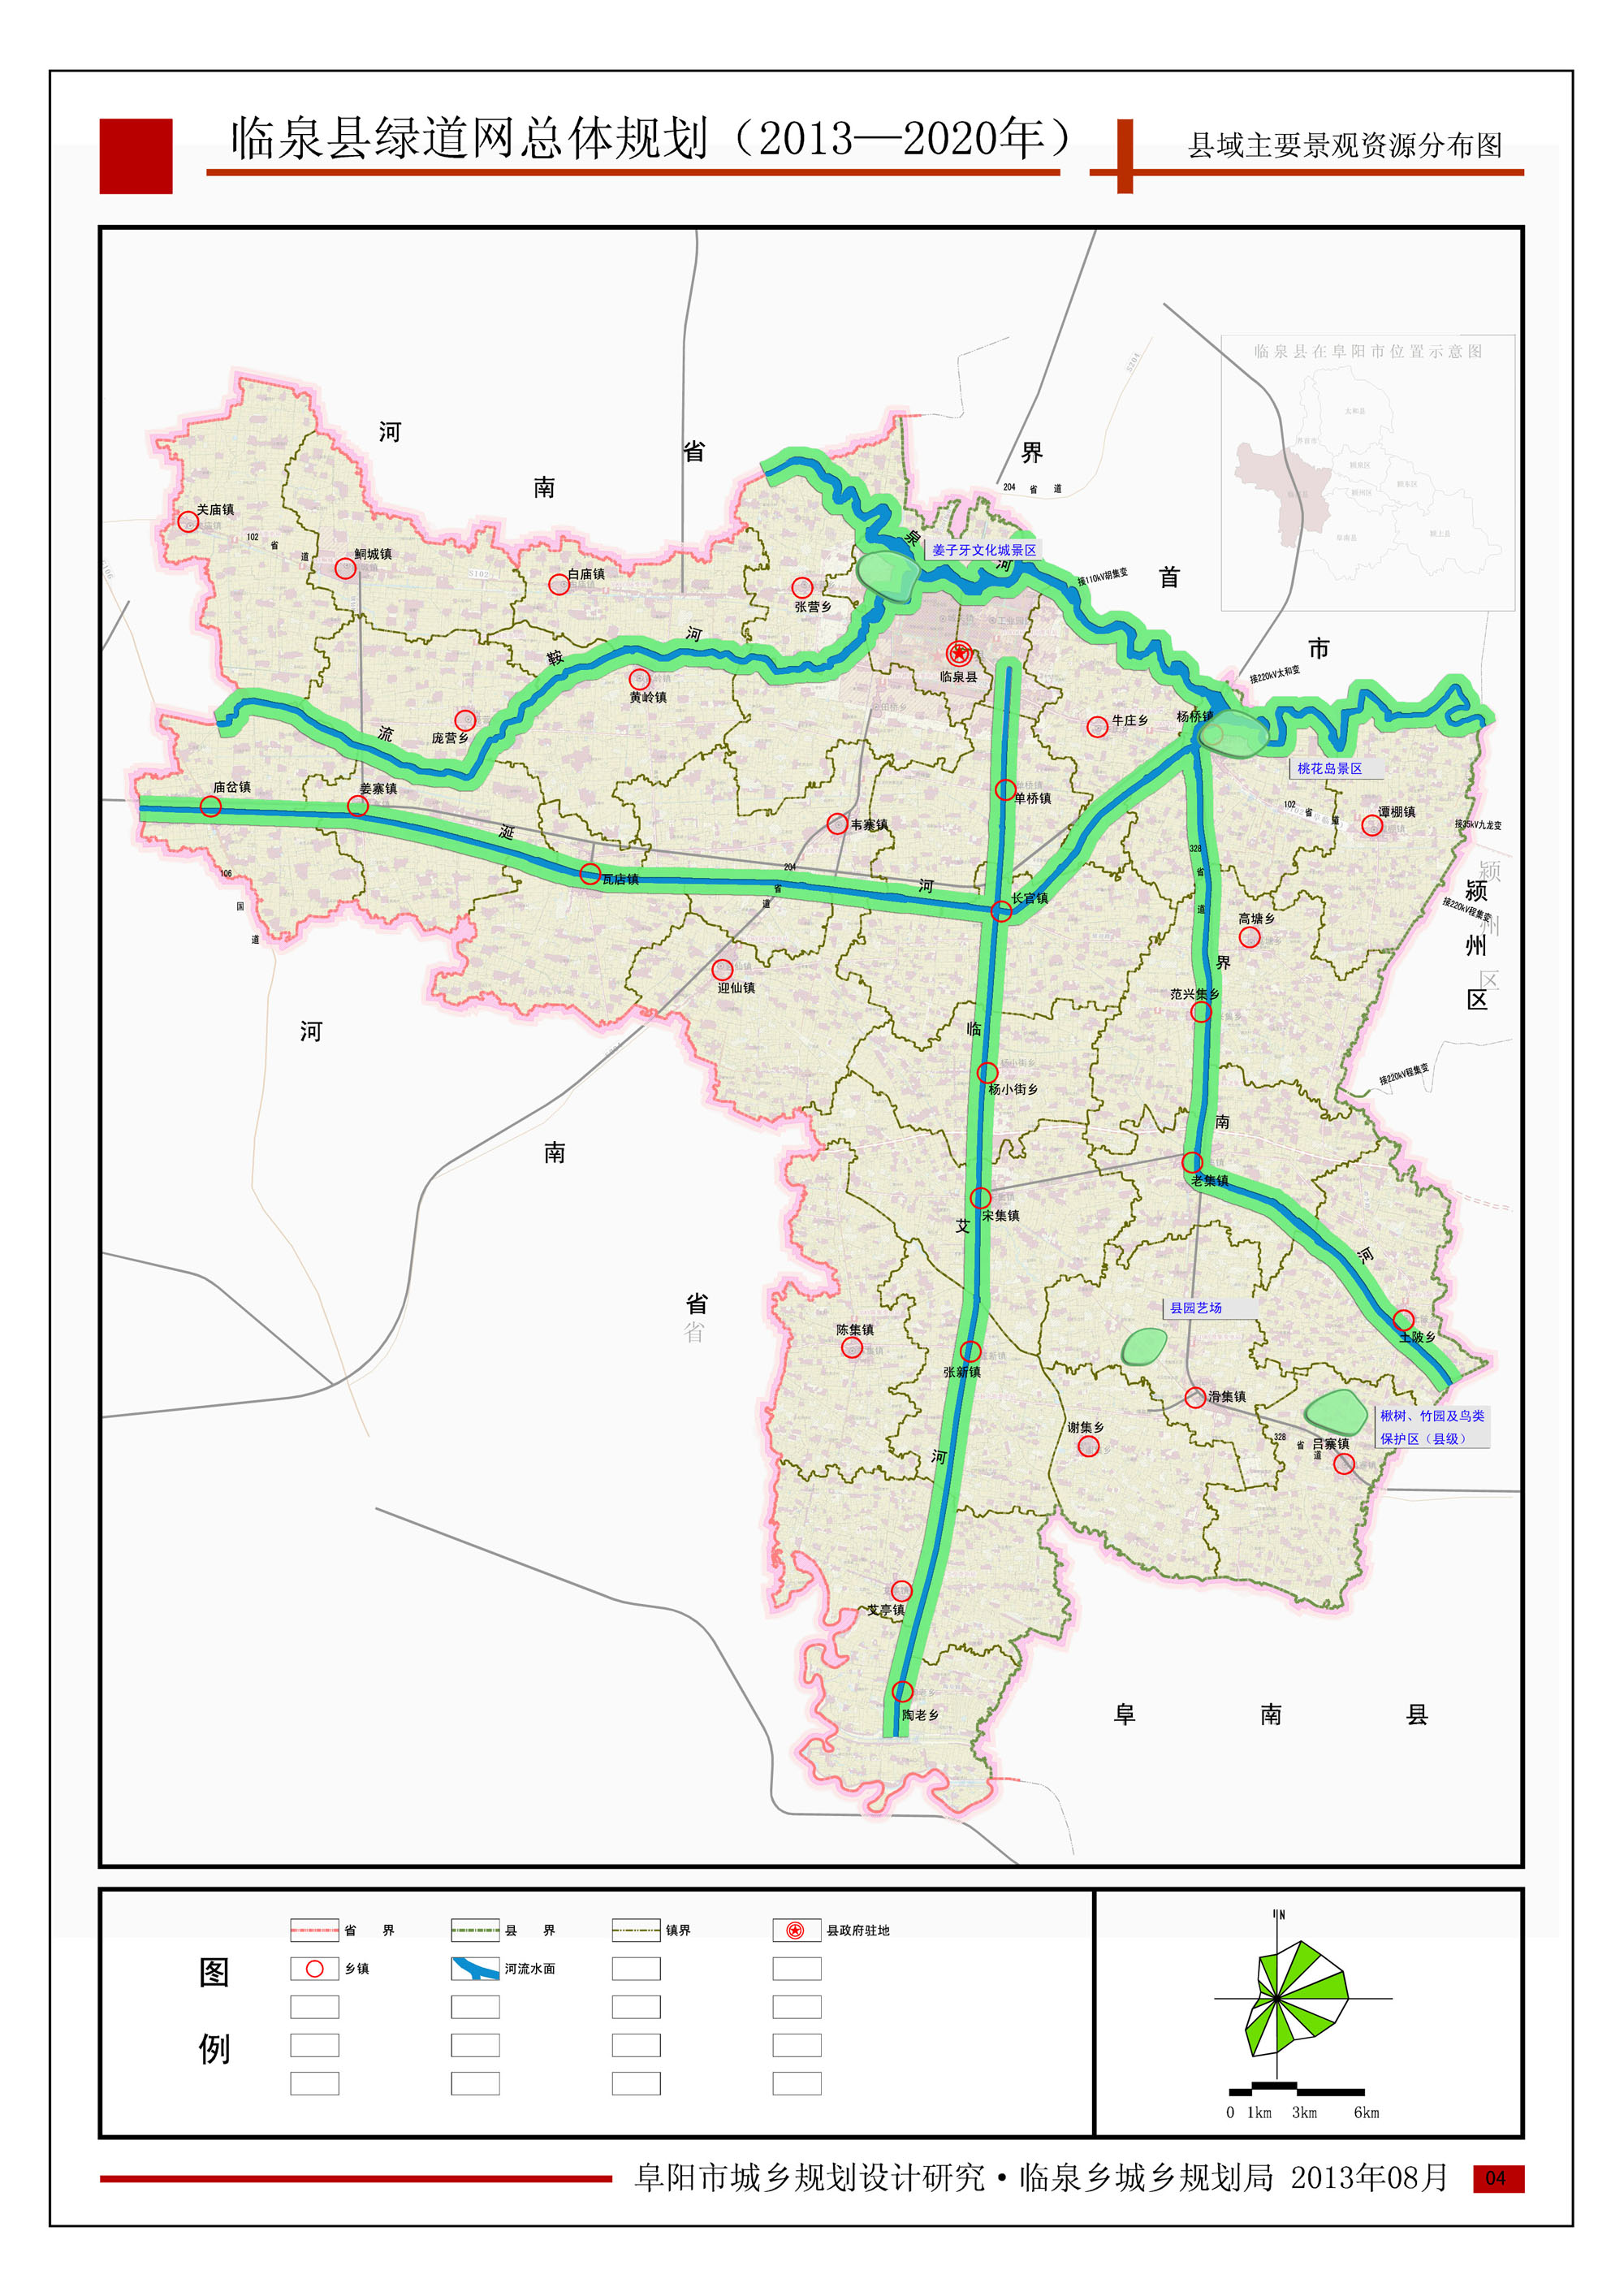 临泉县绿道规划(2013-2020)公示